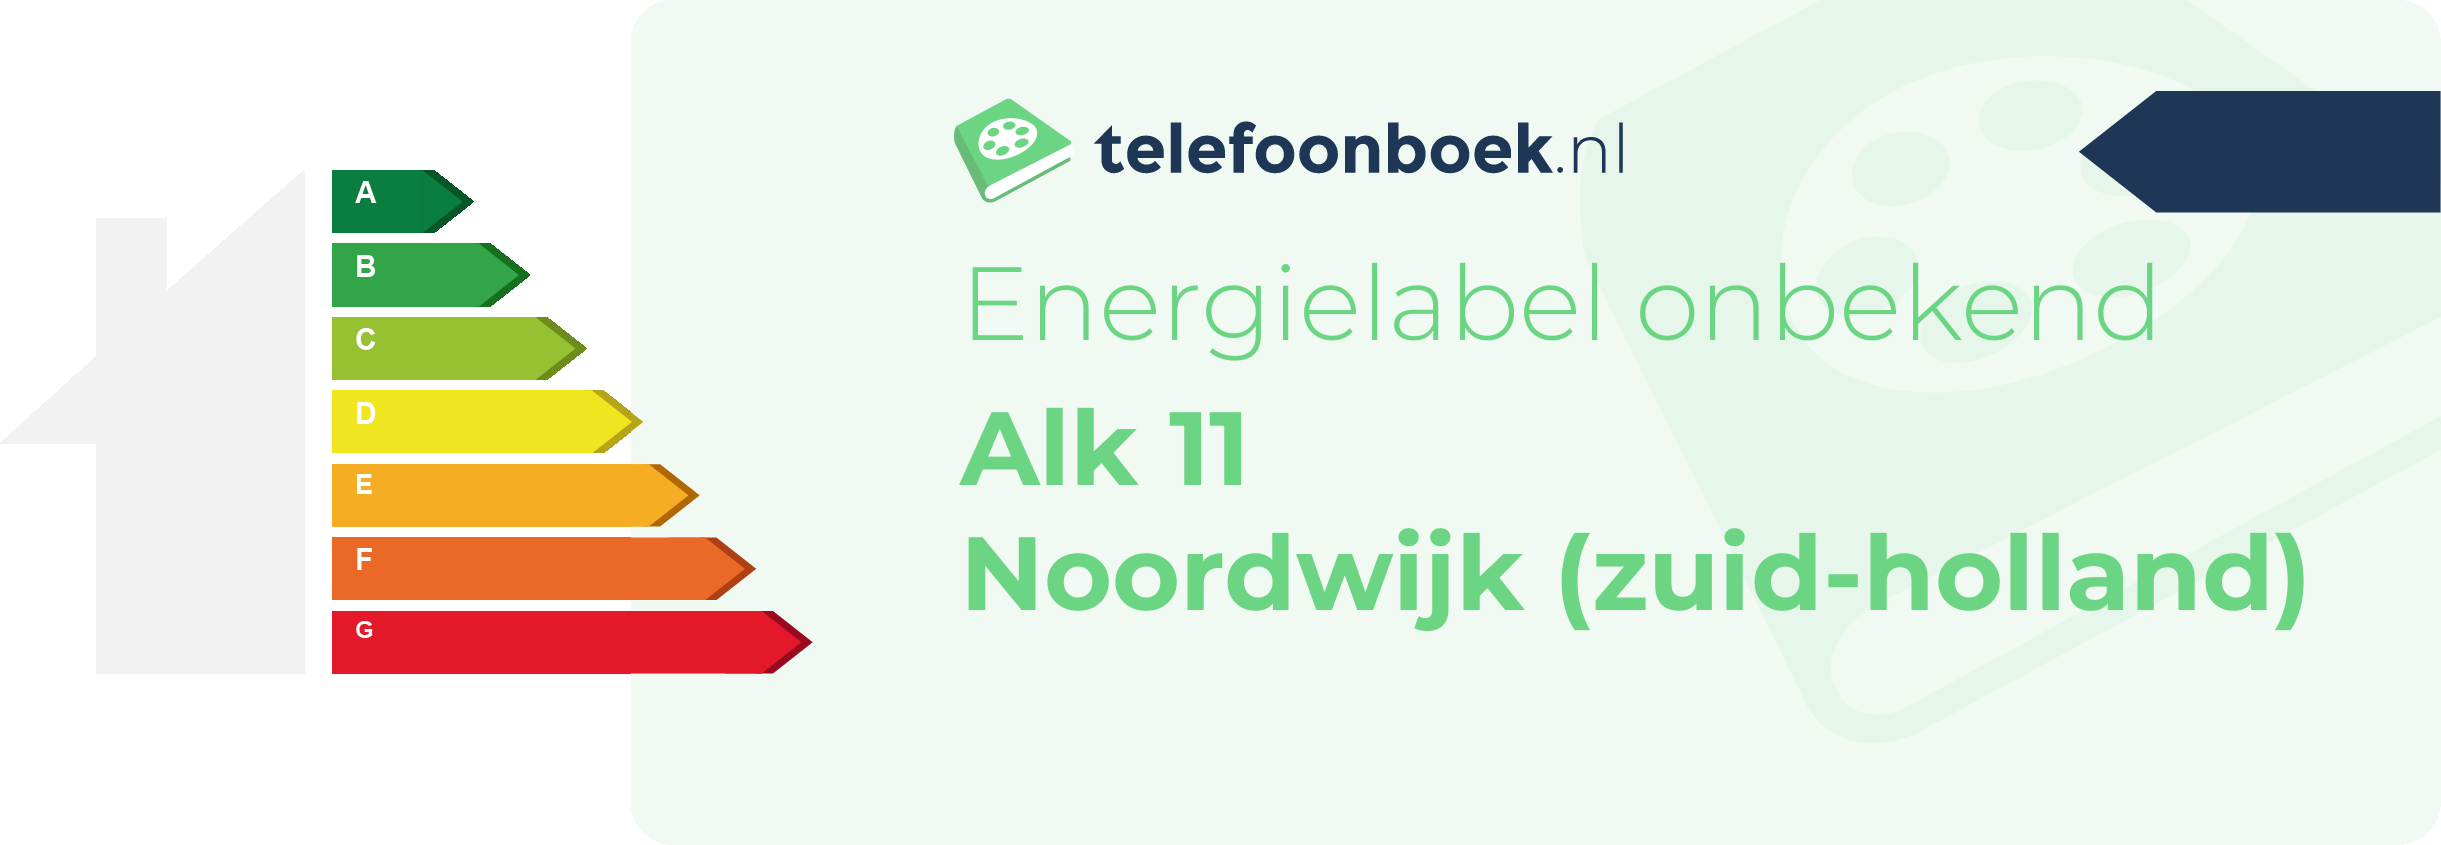 Energielabel Alk 11 Noordwijk (Zuid-Holland)